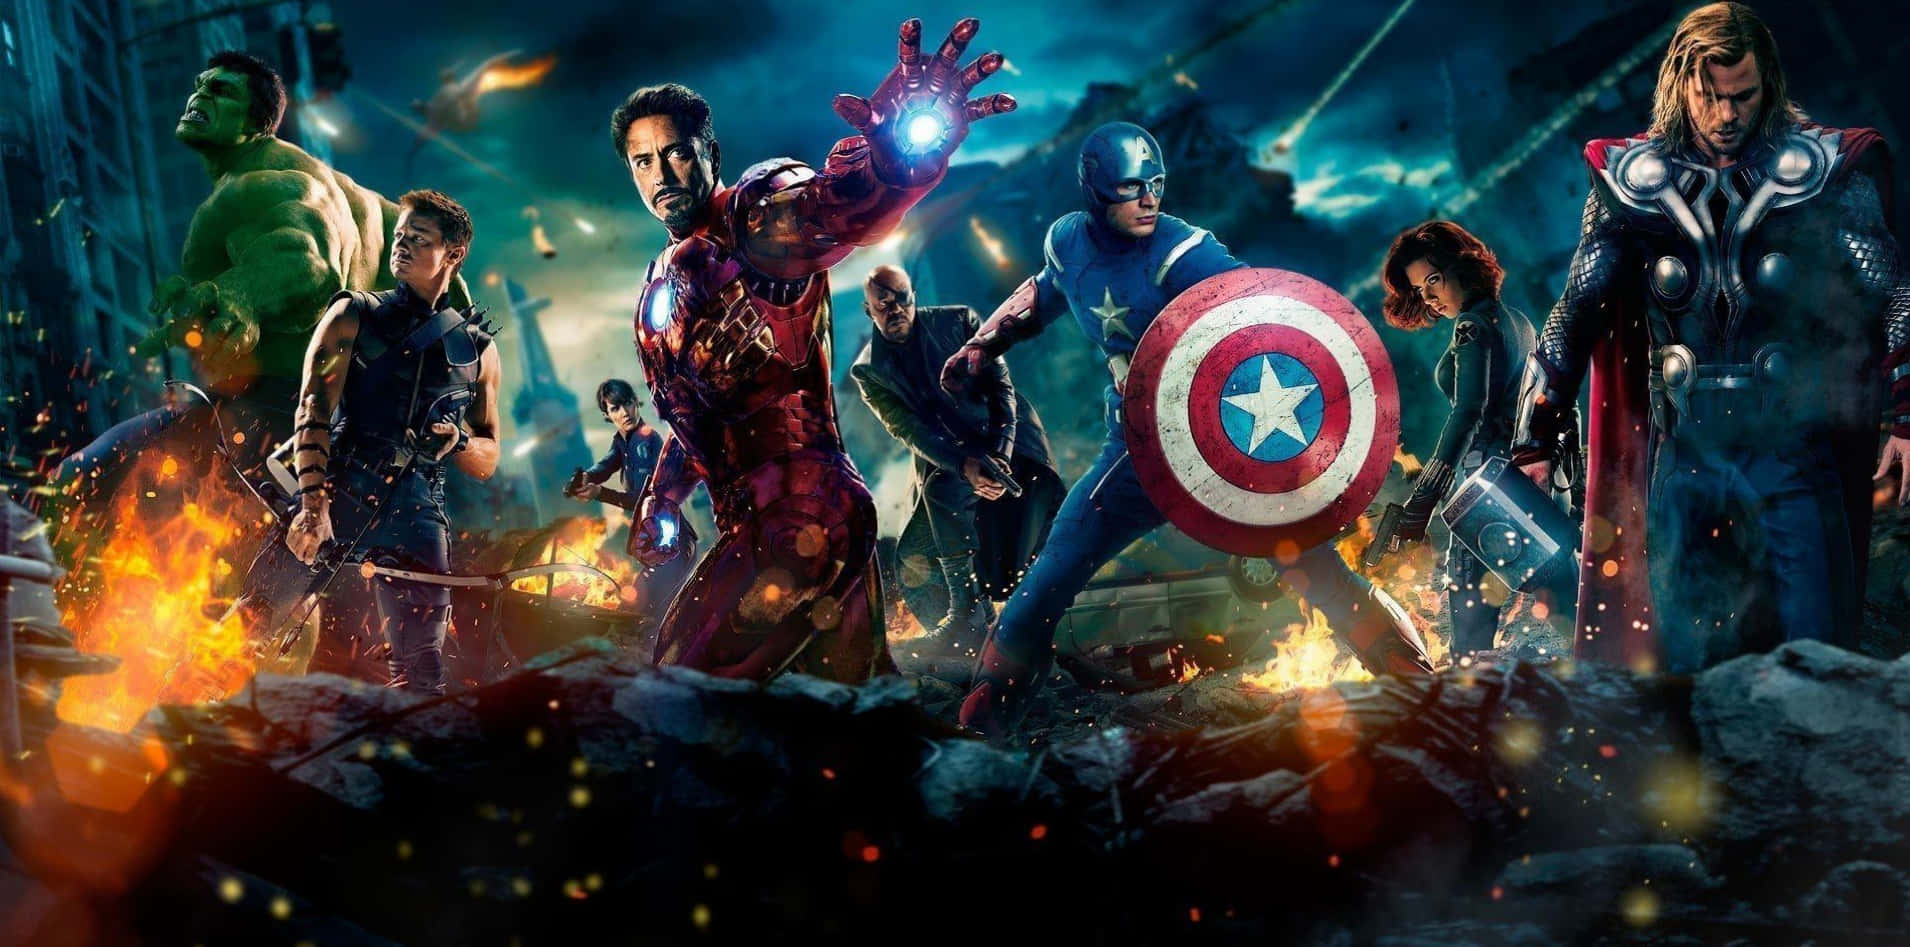 Action Marvel Avengers In New York